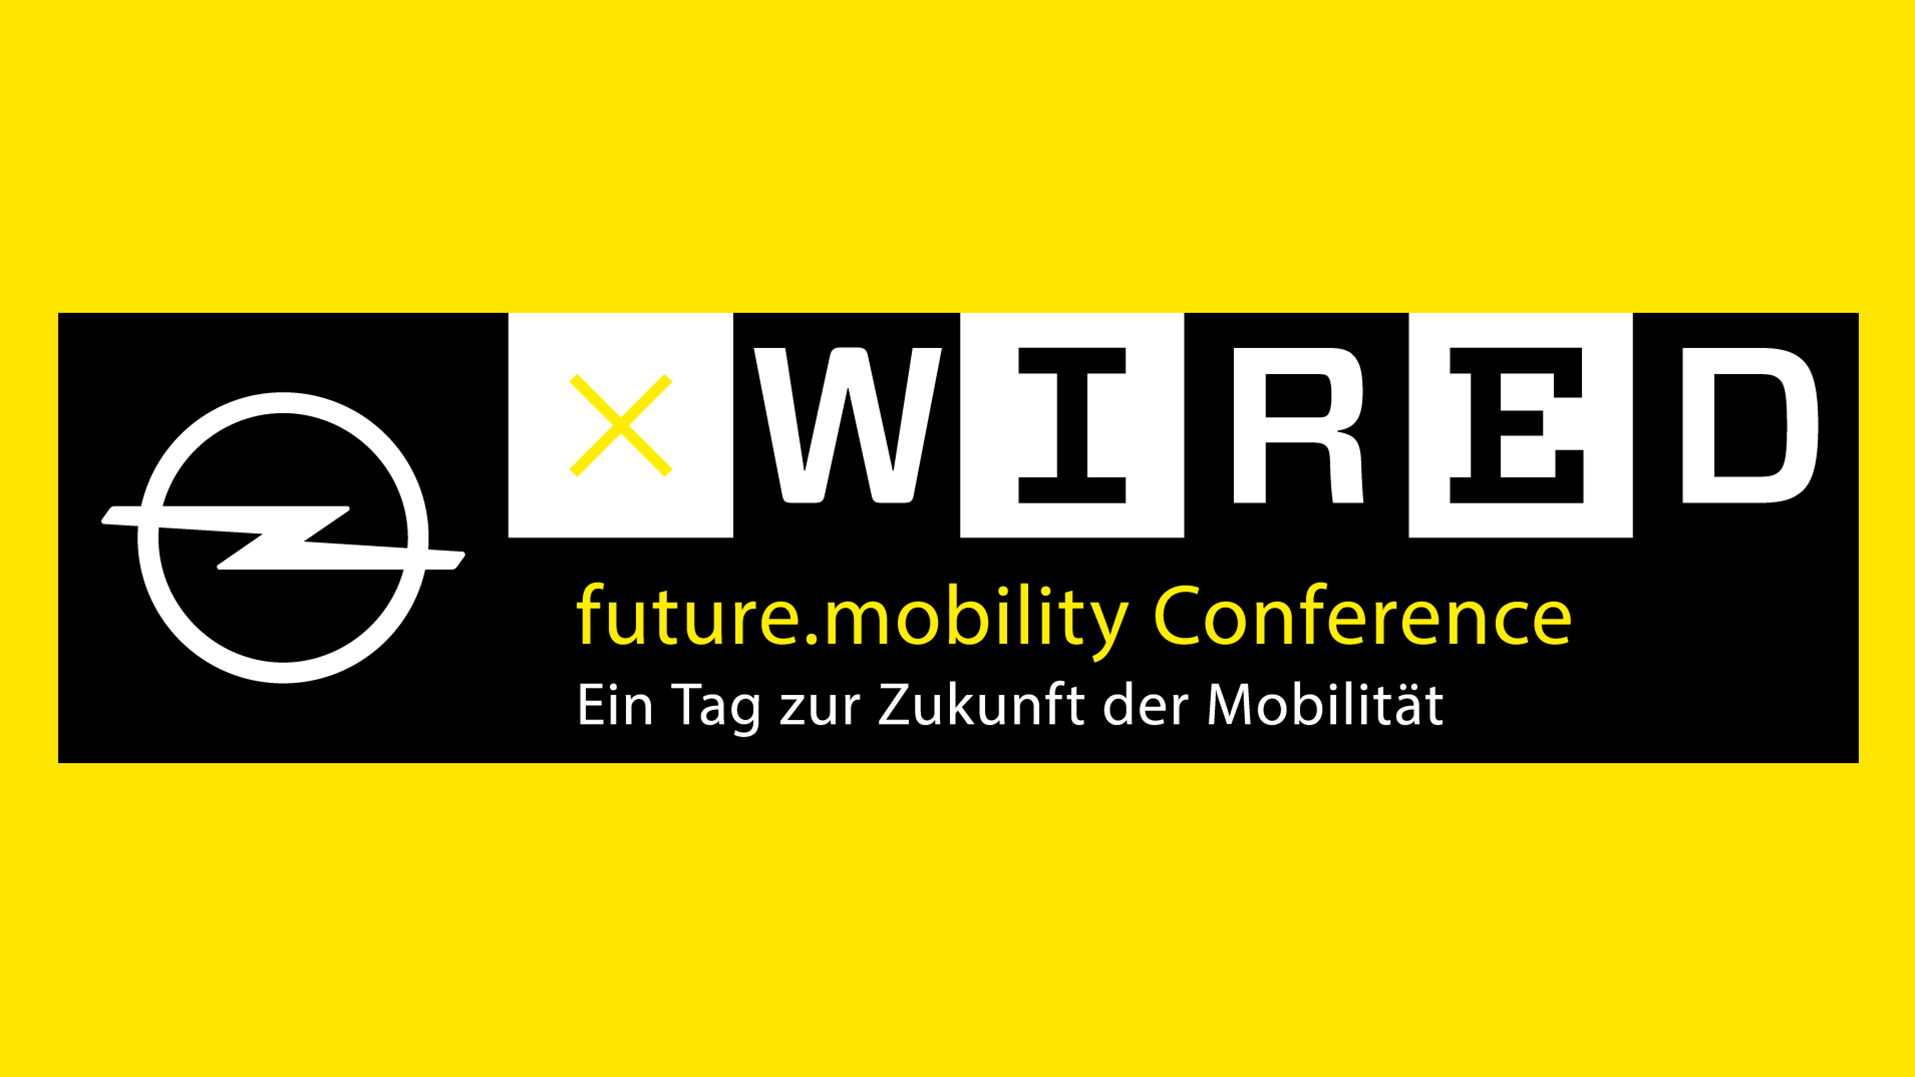 Bericht von der OPELxWIRED future mobility Konferenz. #OpelWiredMobility